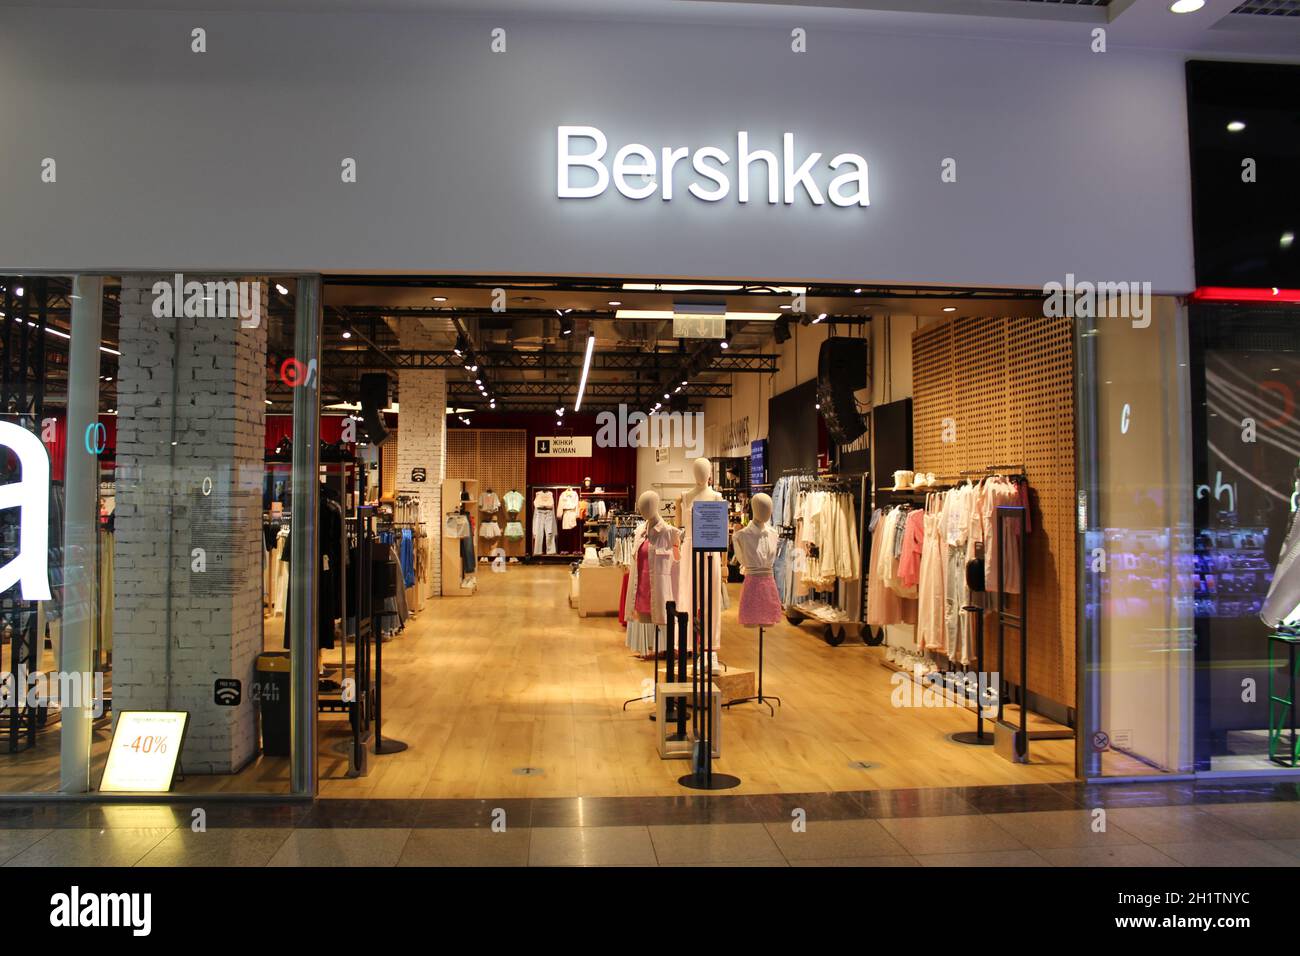 Entrada de la tienda bershka fotografías e imágenes de alta resolución -  Alamy